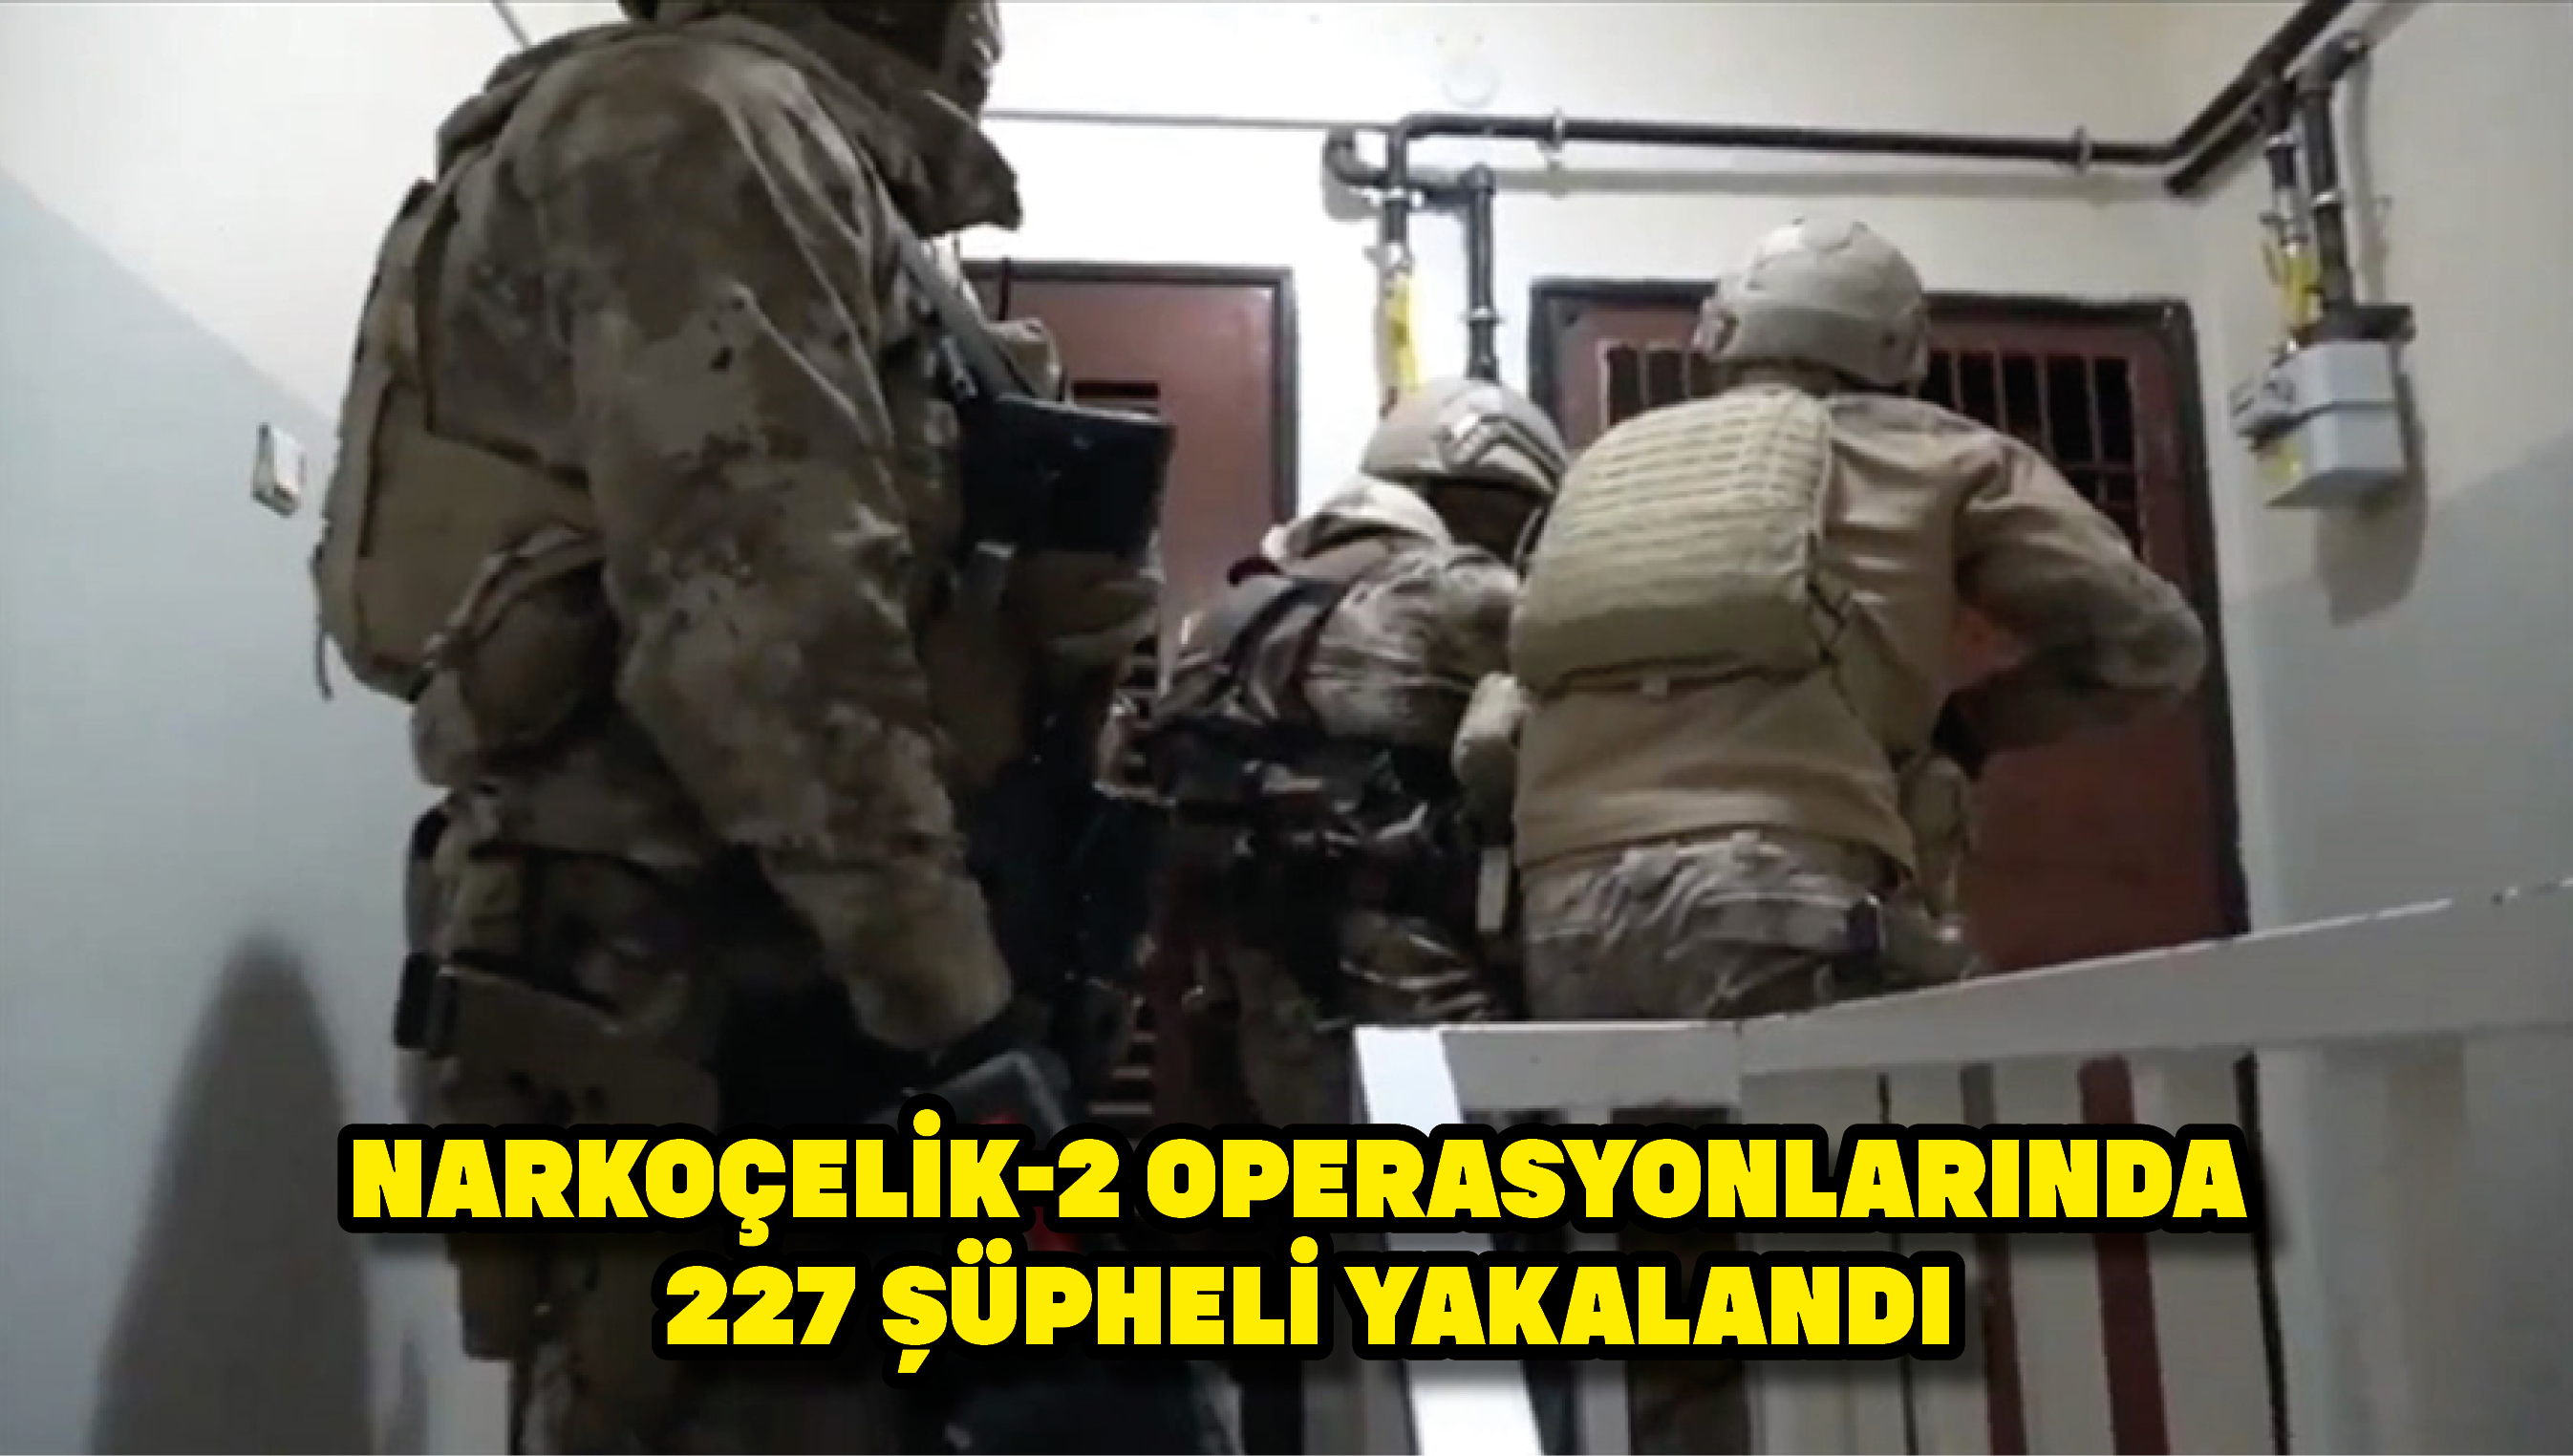 Narkoçelik-2 operasyonlarında 227 şüpheli yakalandı